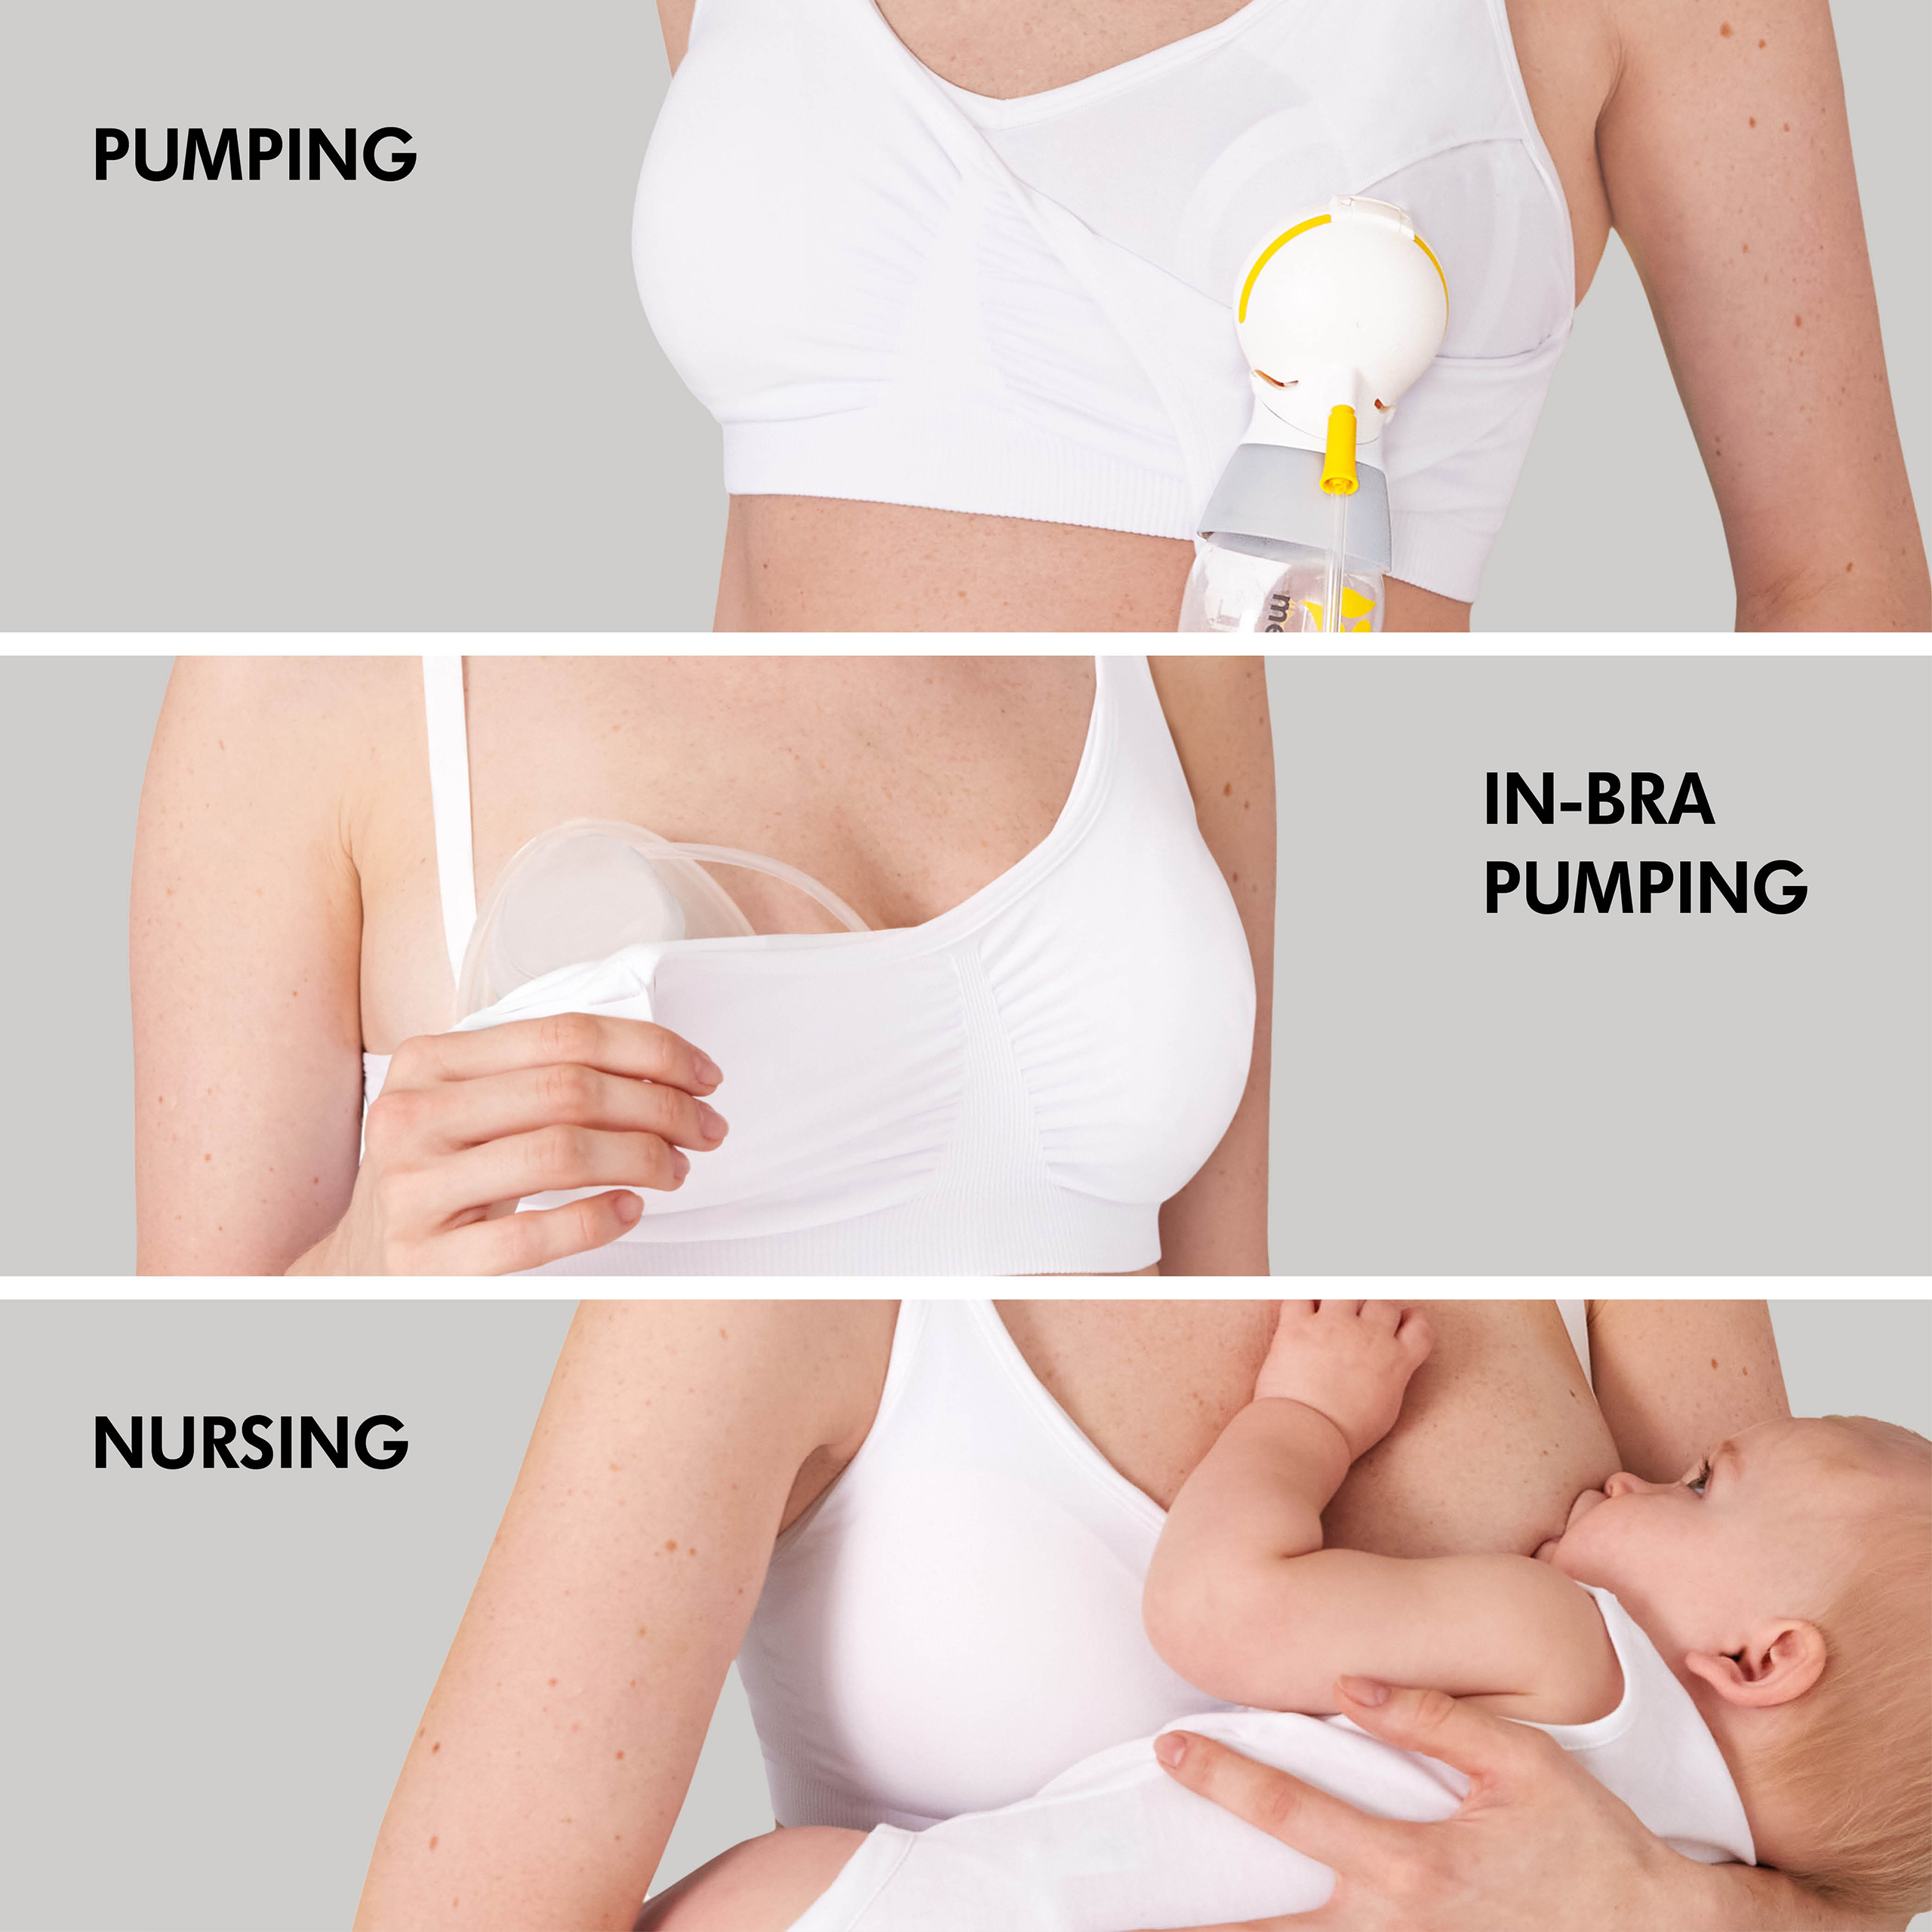 EUC Larken Nursing / Pumping Bra - XL  Pumping bras, Breastfeeding and  pumping, Pumping